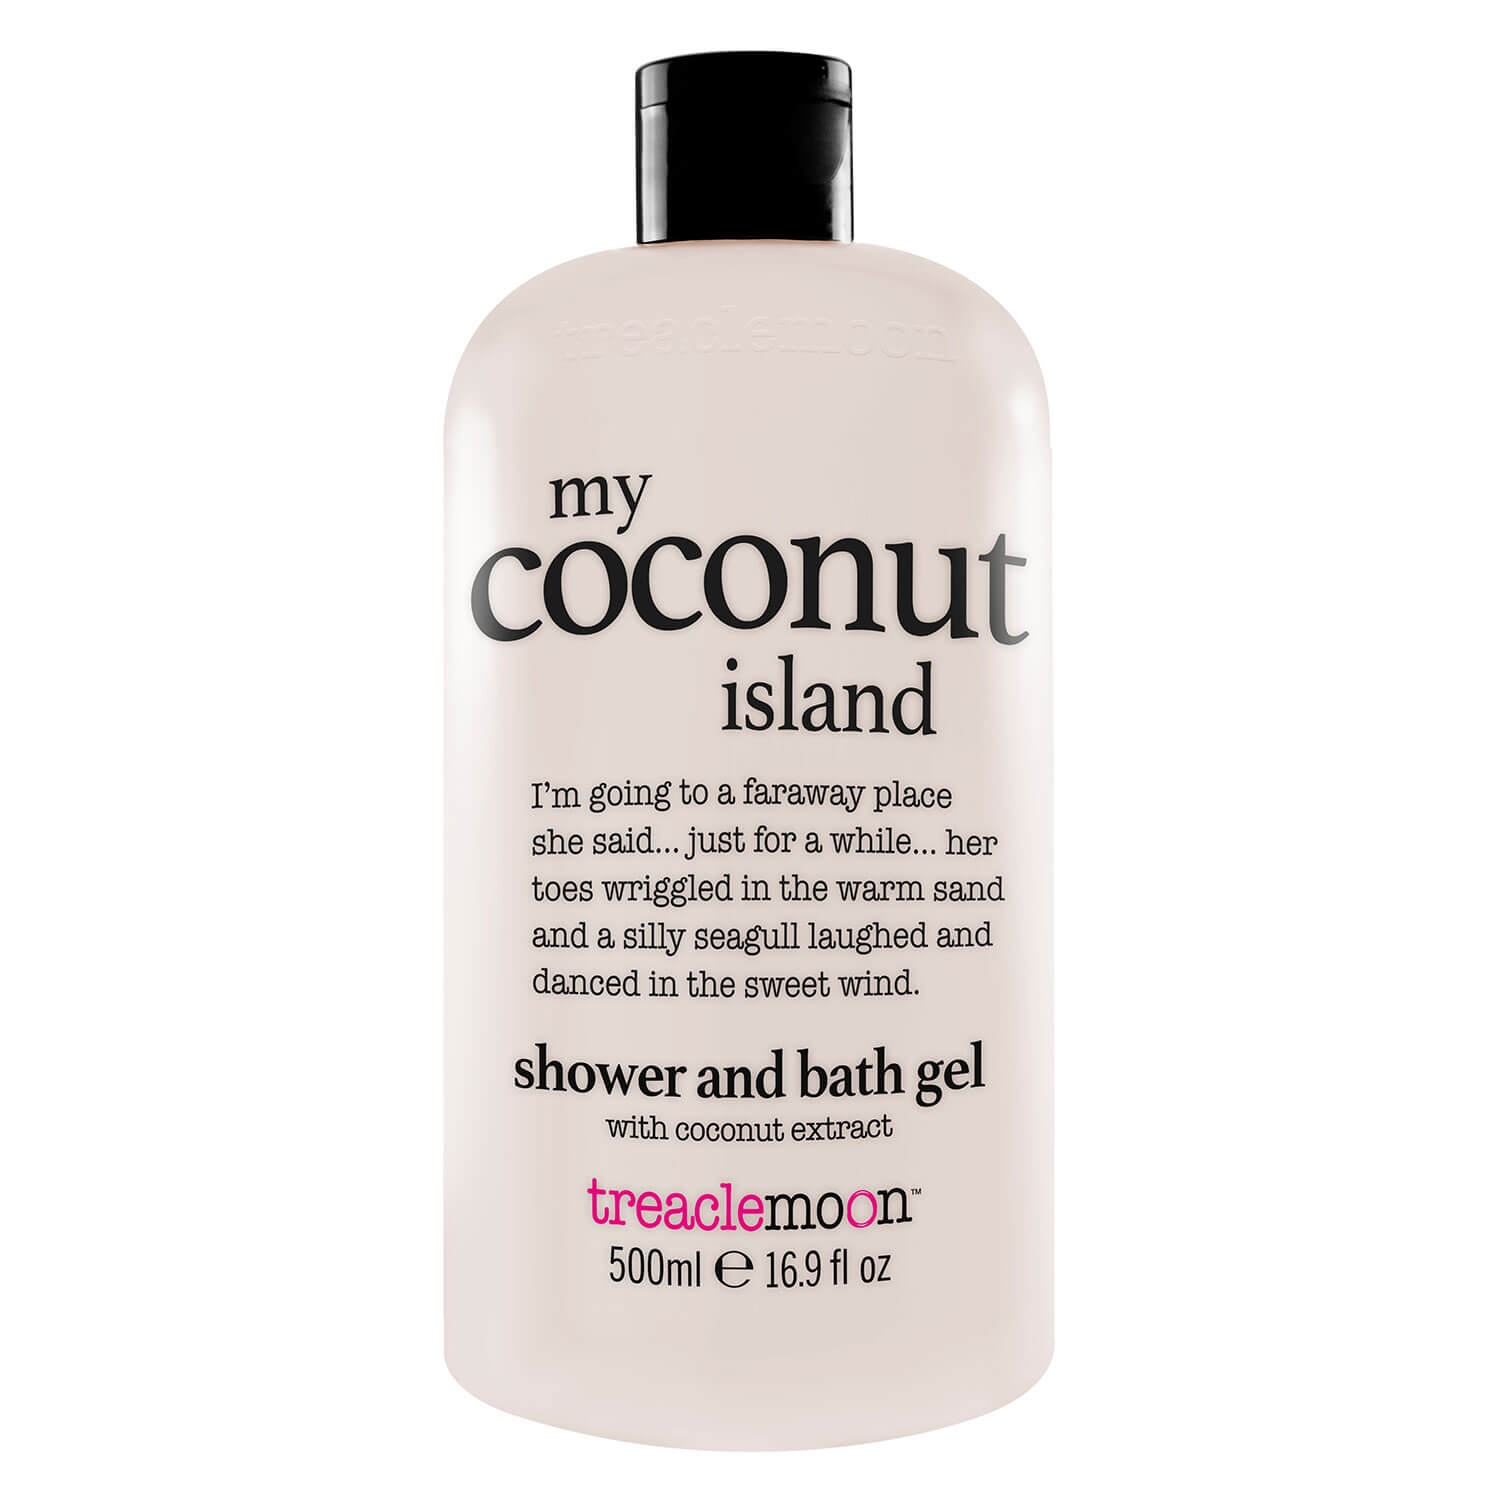 Produktbild von treaclemoon - my coconut island shower and bath gel